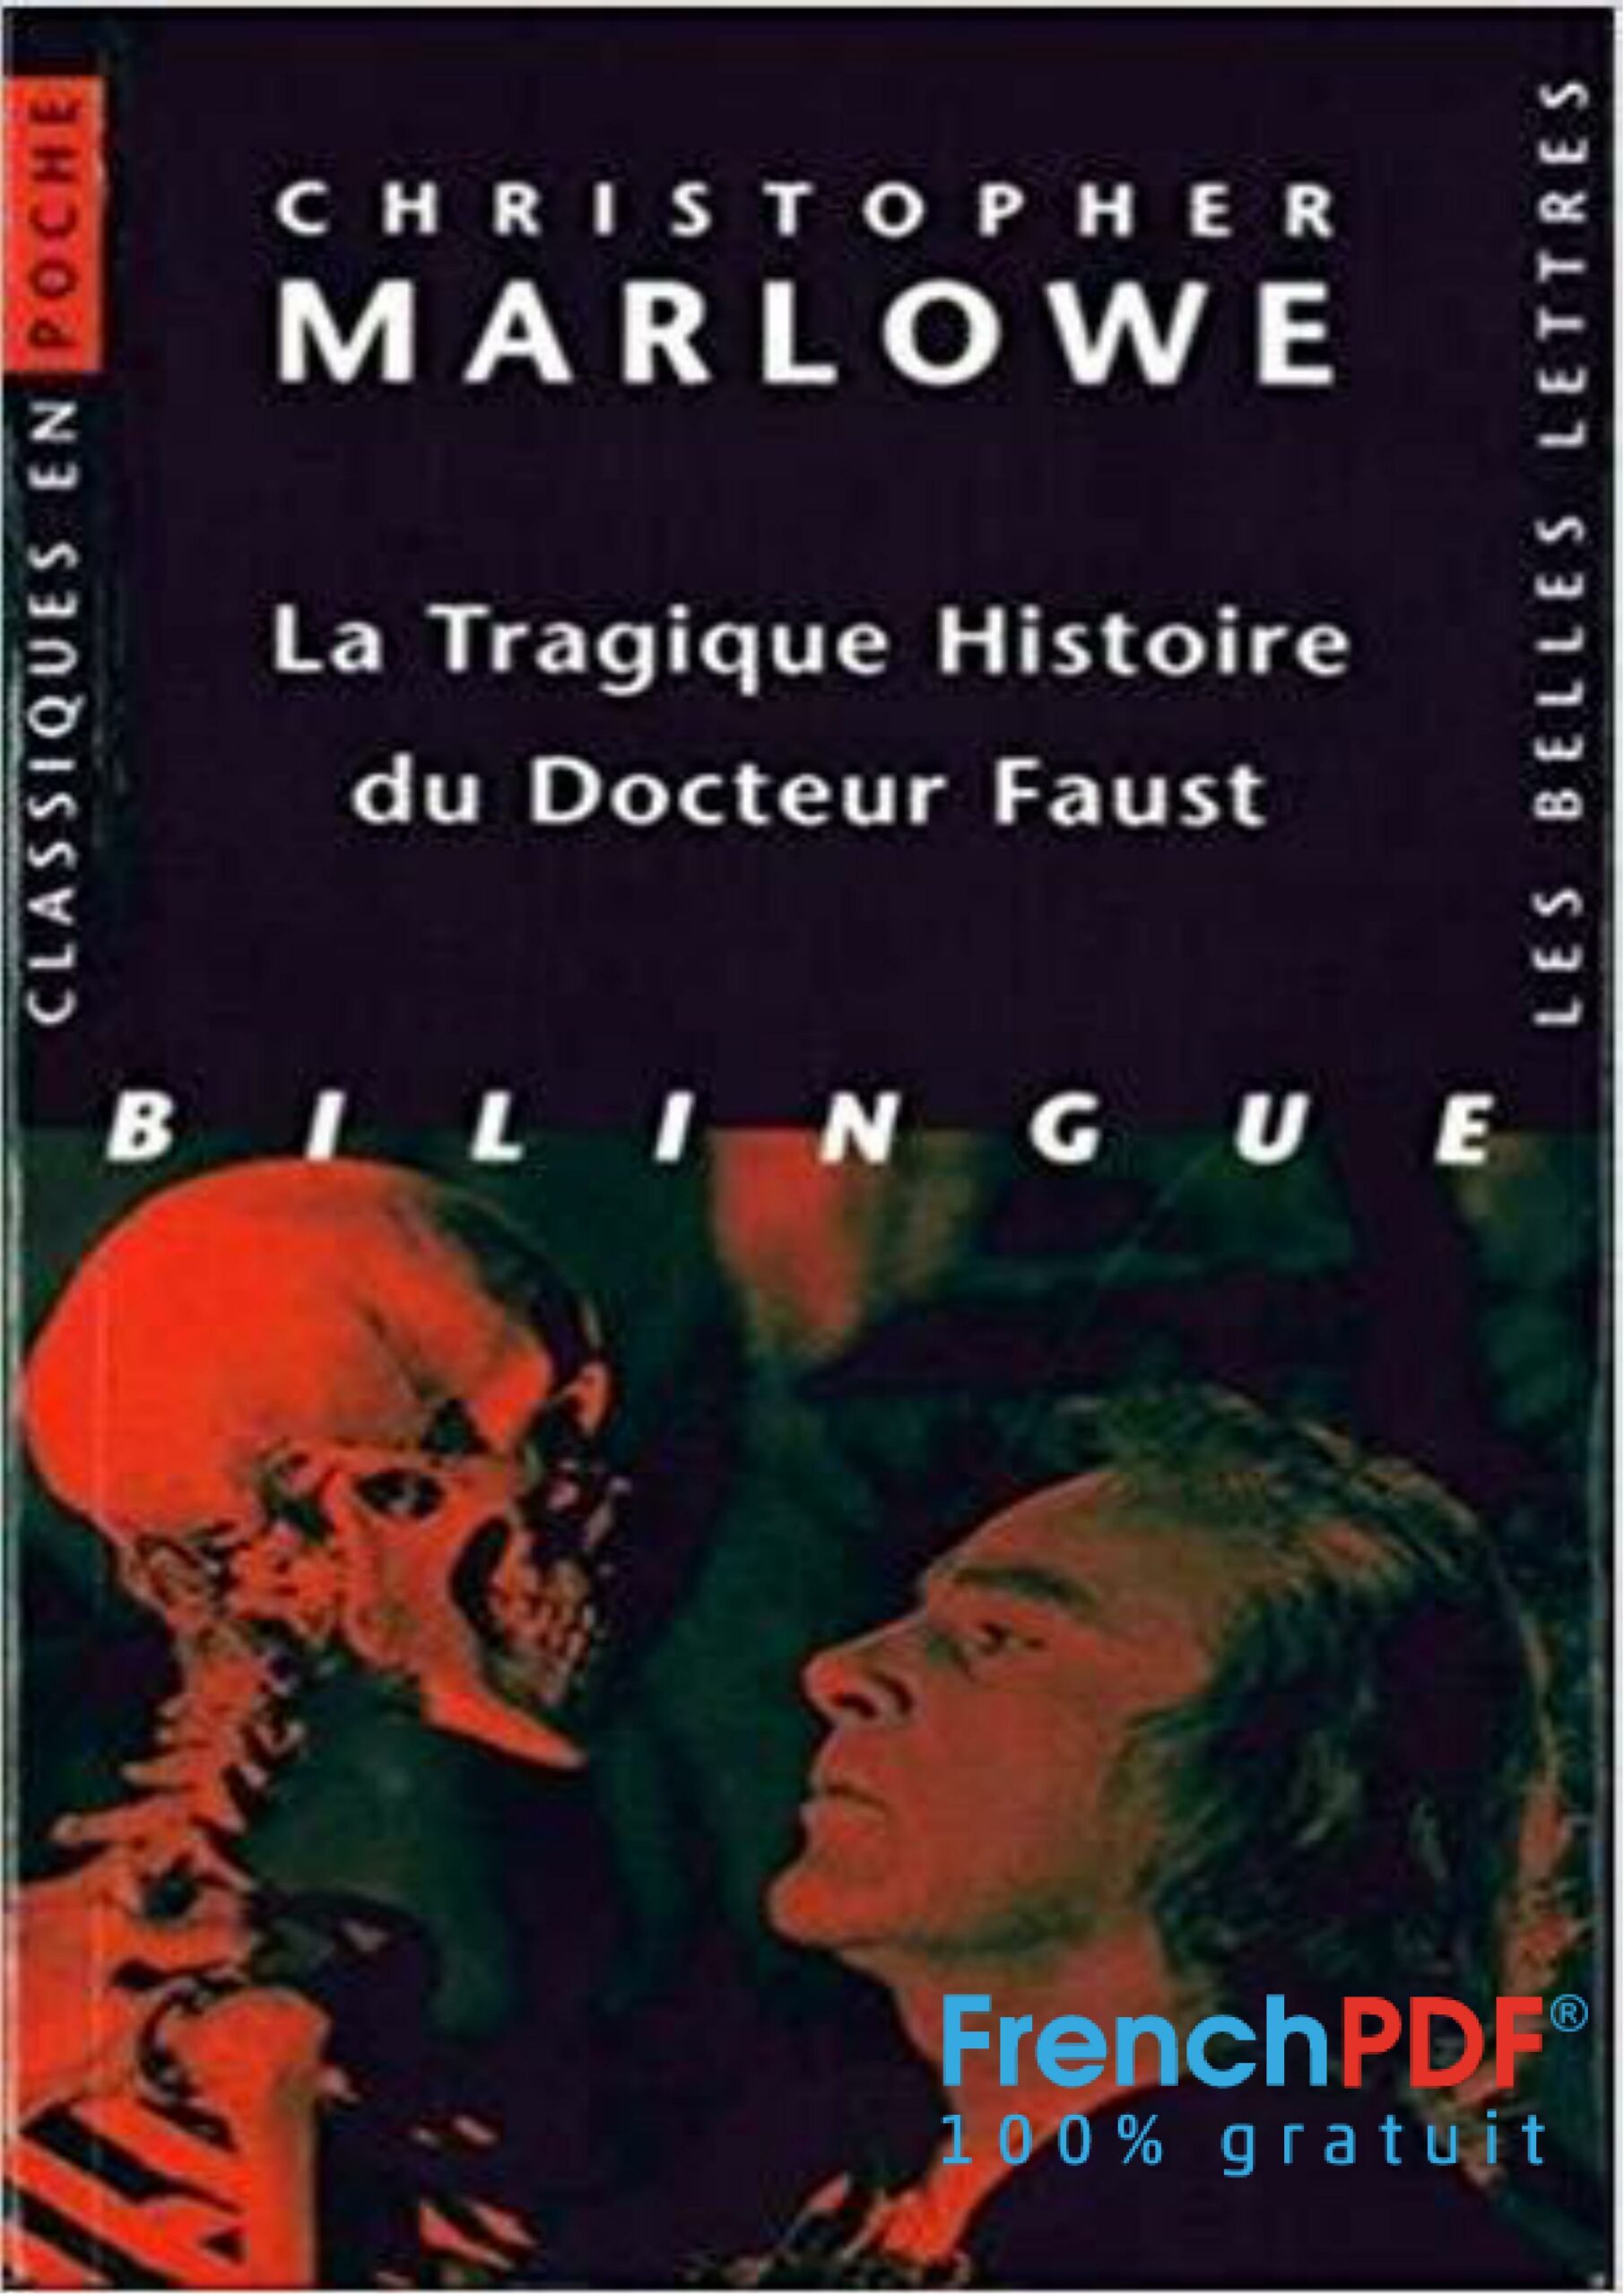 La Tragique Histoire du docteur Faust PDF - frenchpdf.com